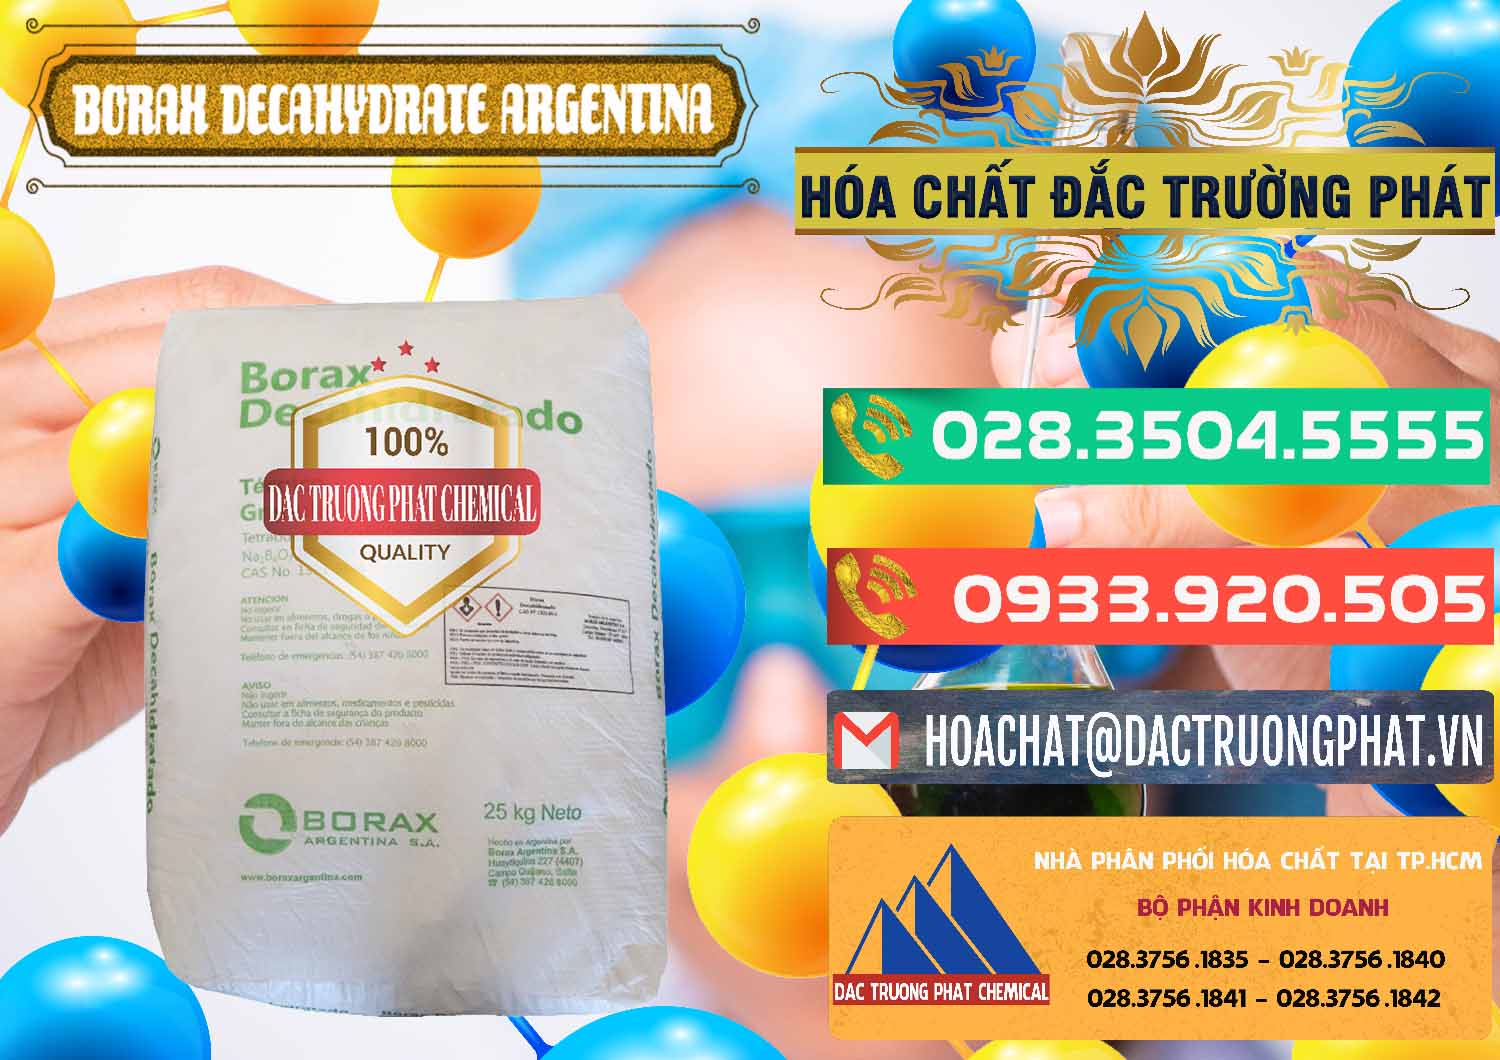 Nơi bán Borax Decahydrate Argentina - 0446 - Cty nhập khẩu ( cung cấp ) hóa chất tại TP.HCM - congtyhoachat.com.vn